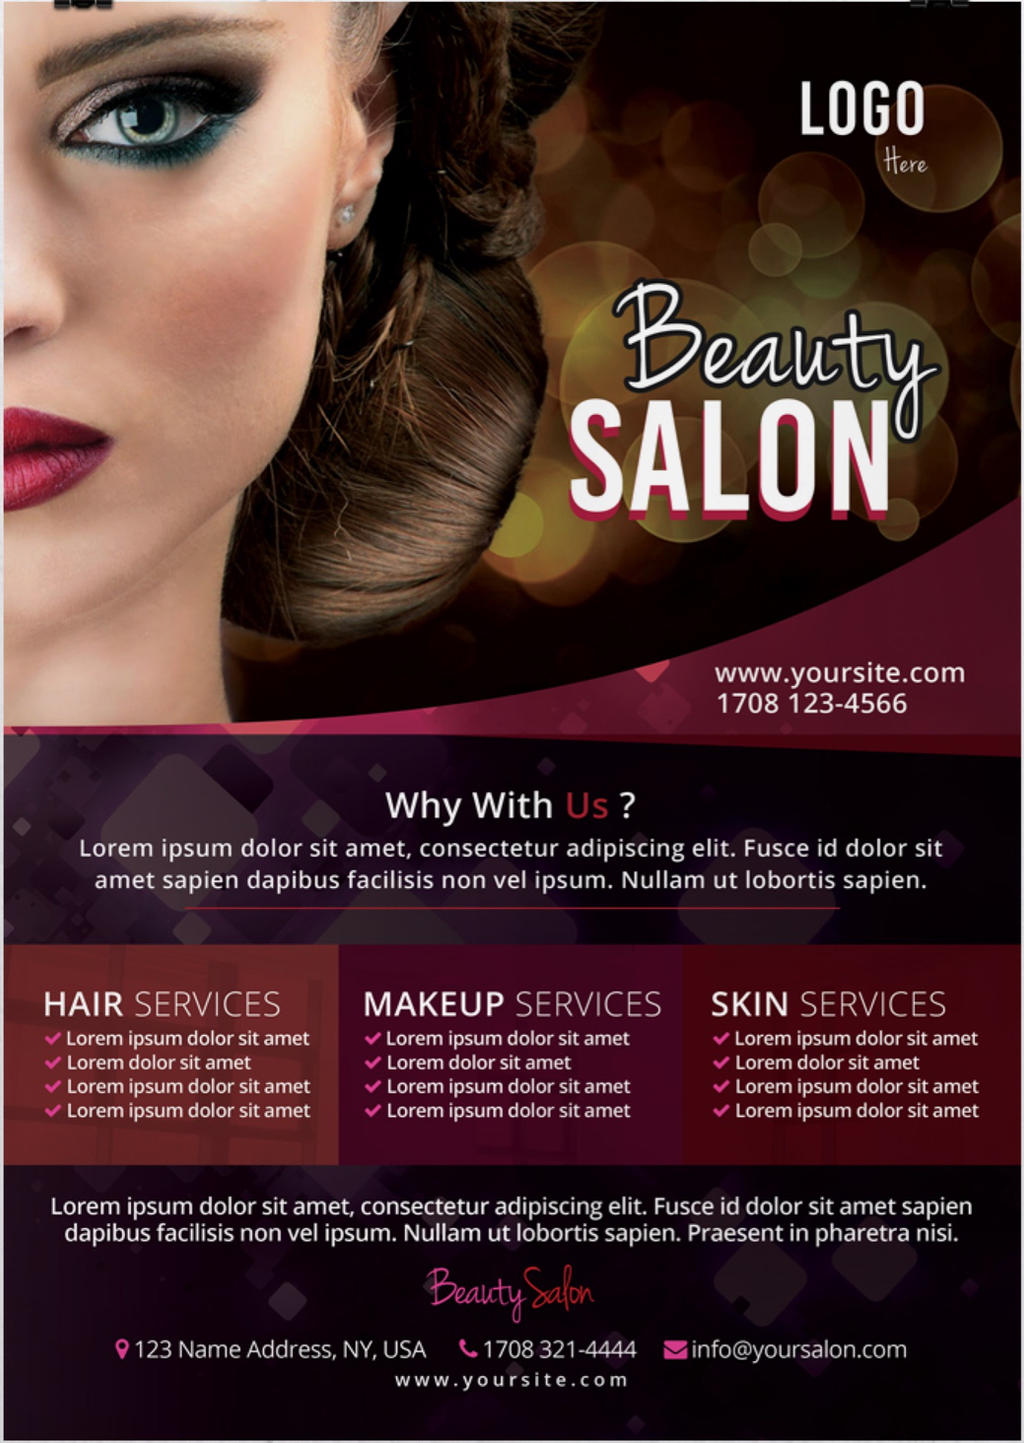 Beauty Salon Free PSD Flyer Template by stockpsd on DeviantArt